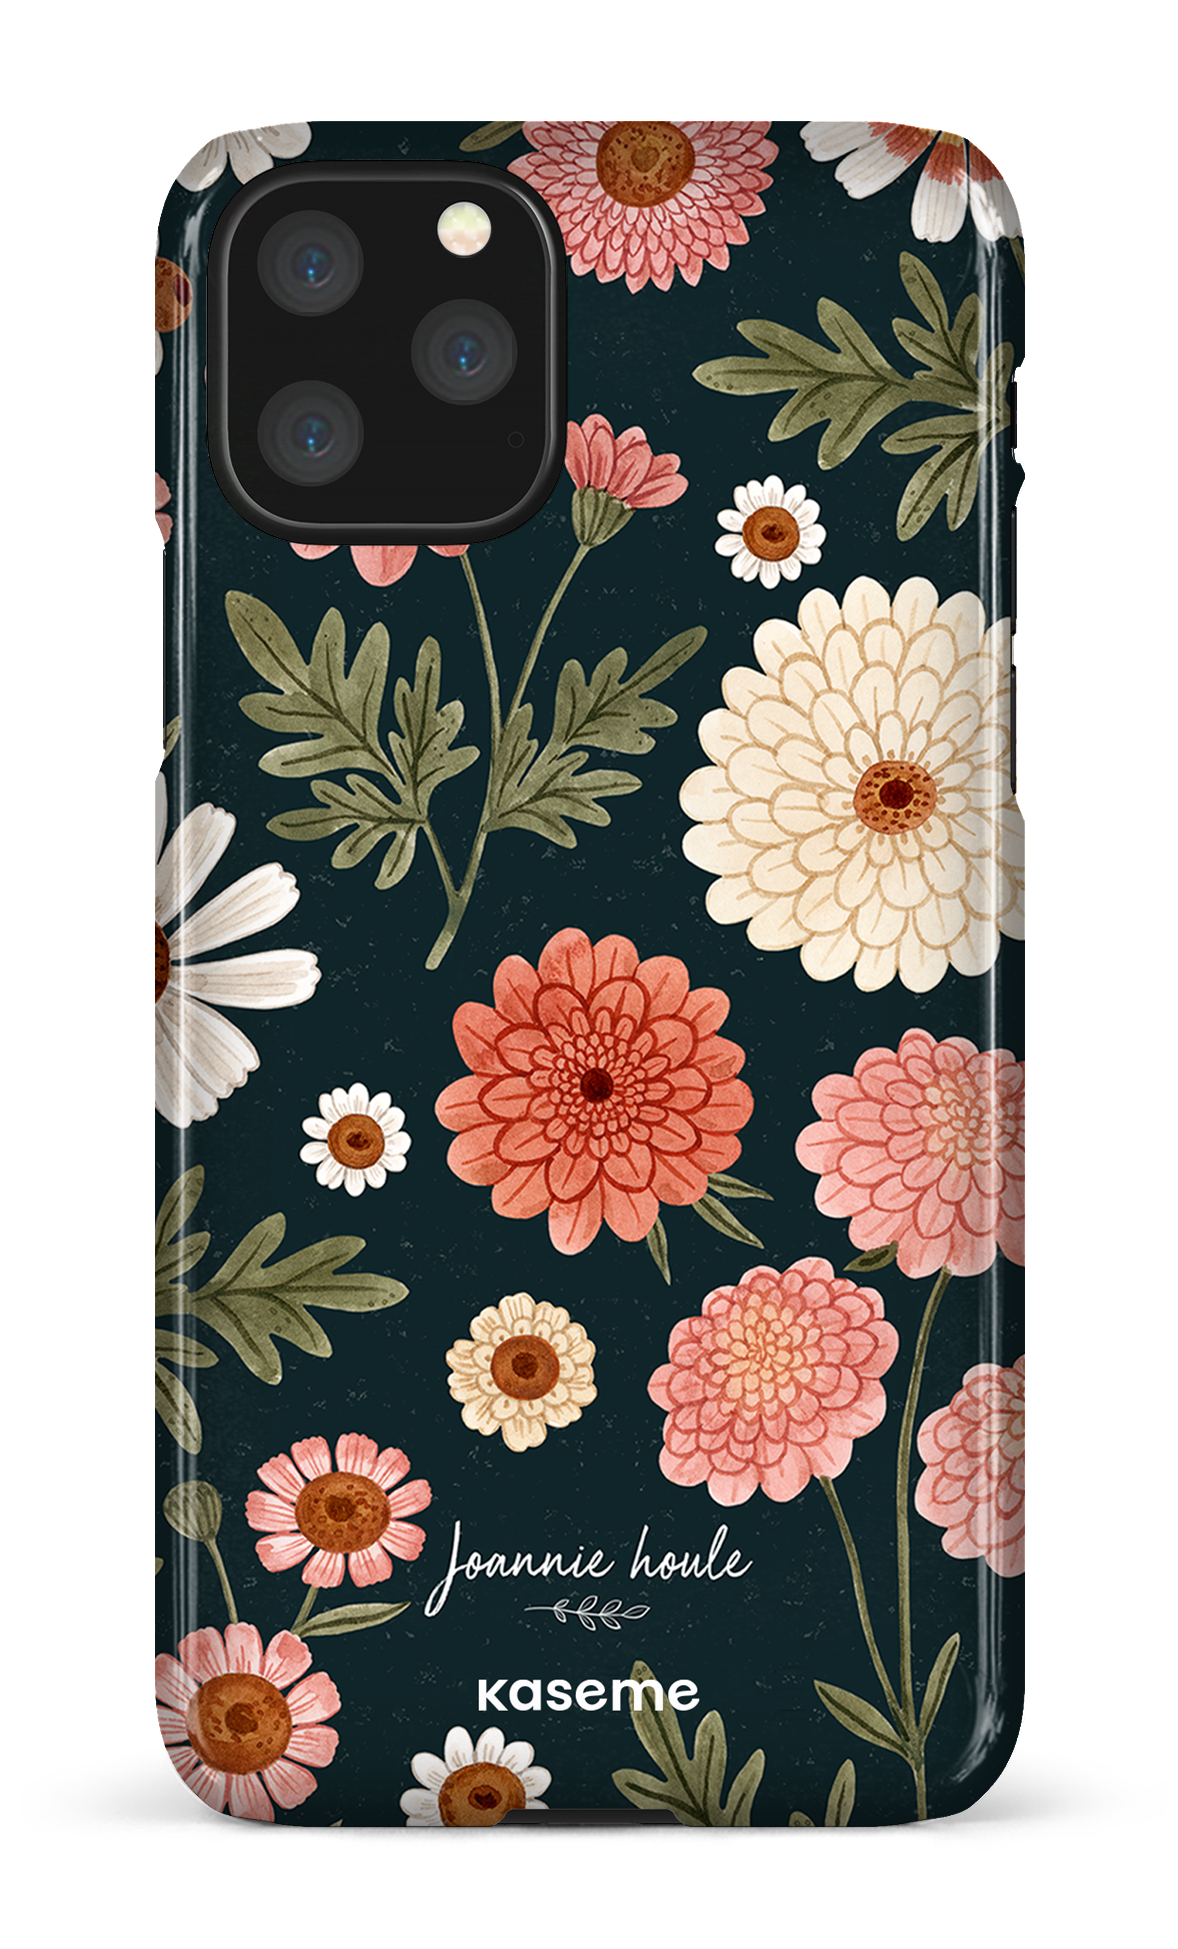 Chrysanthemums by Joannie Houle - iPhone 11 Pro